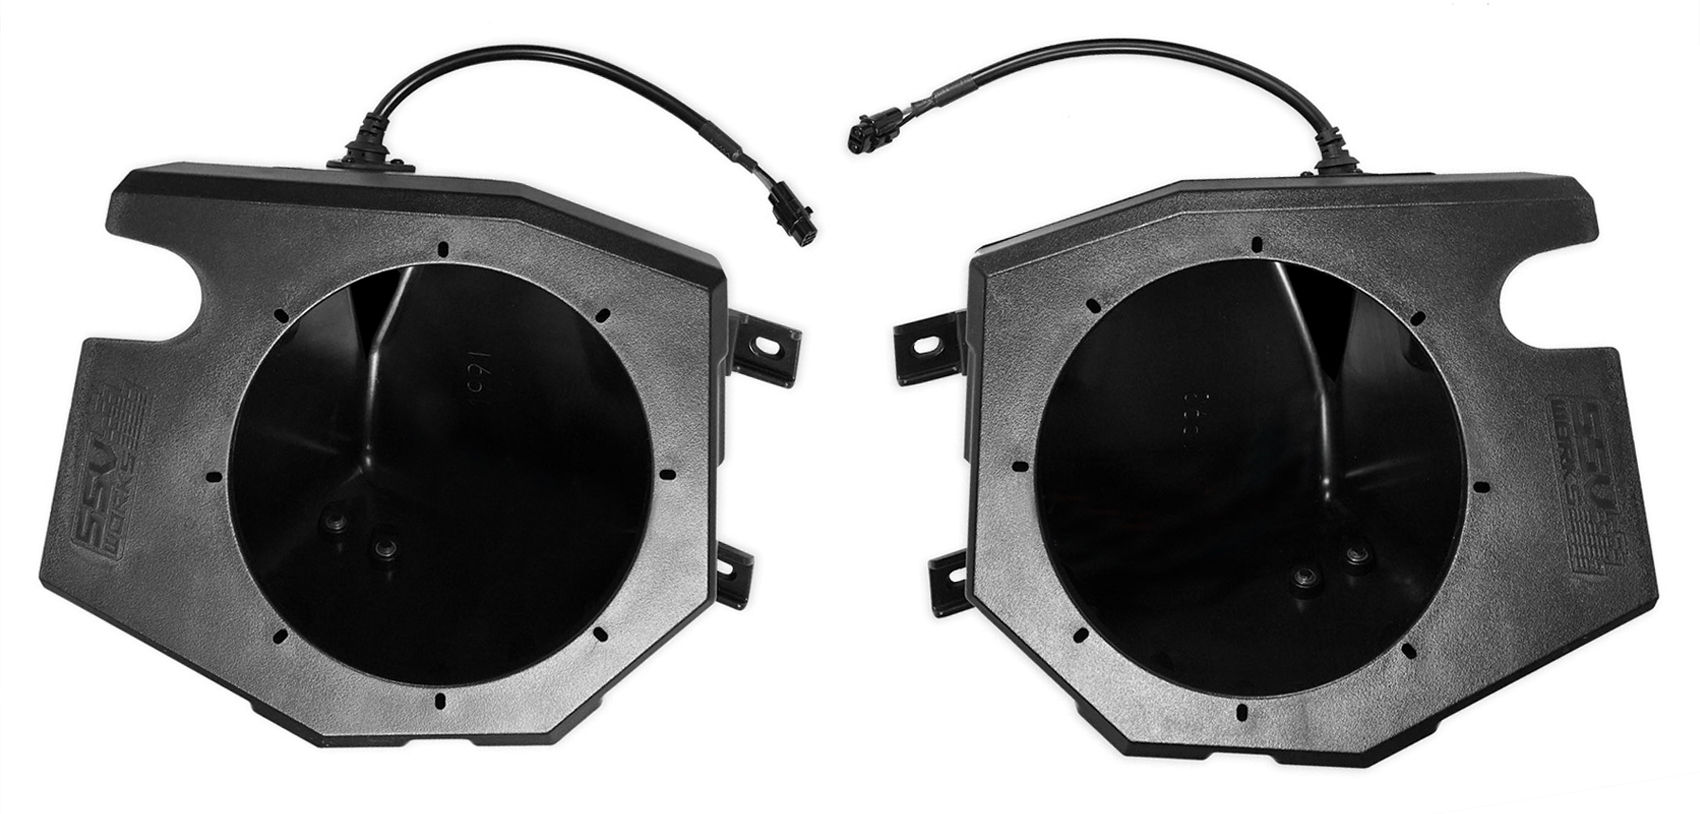 Kicker 6.5 LED Speakers for 2014-18 Polaris RZR 1000//900S//Turbo+Speaker Pods.